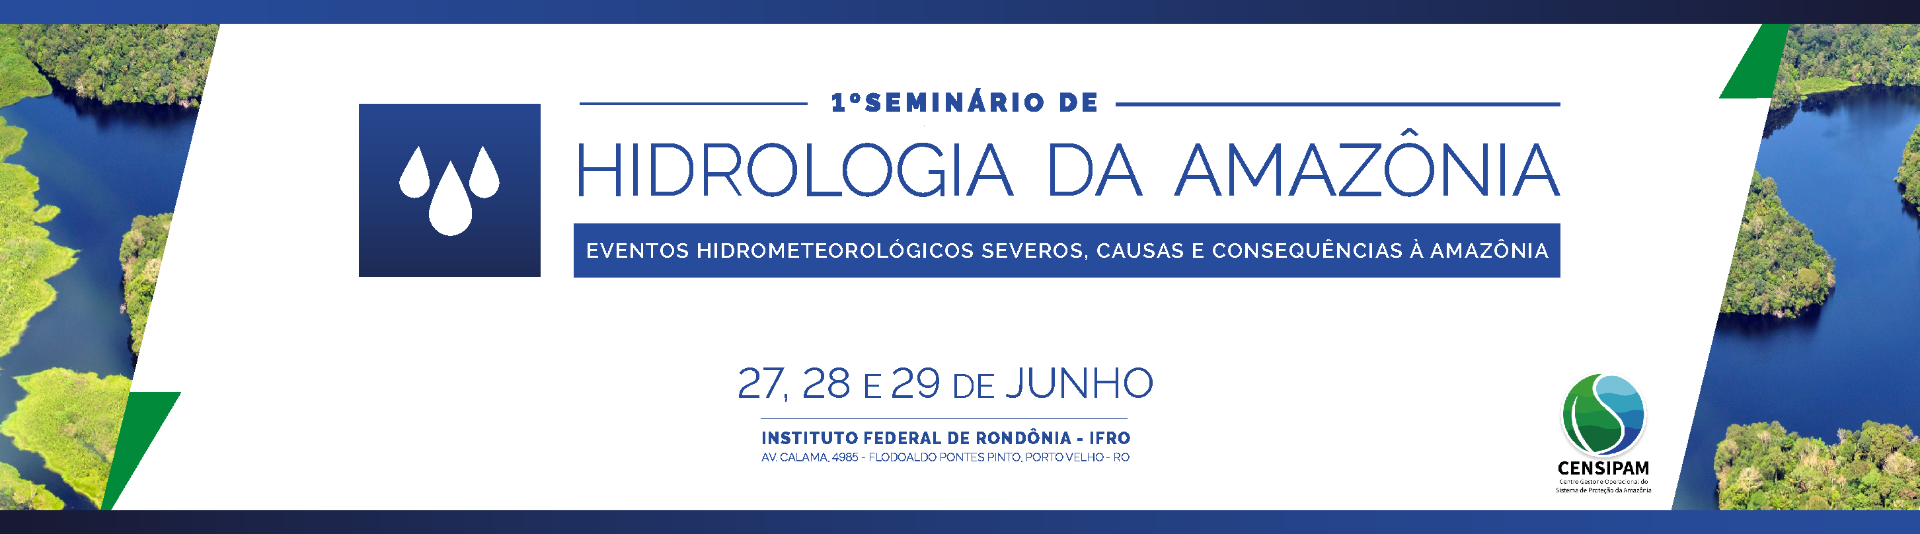 Banner_interno_matéria_Intra_1110x520_Seminário_de_Hidrologia.png